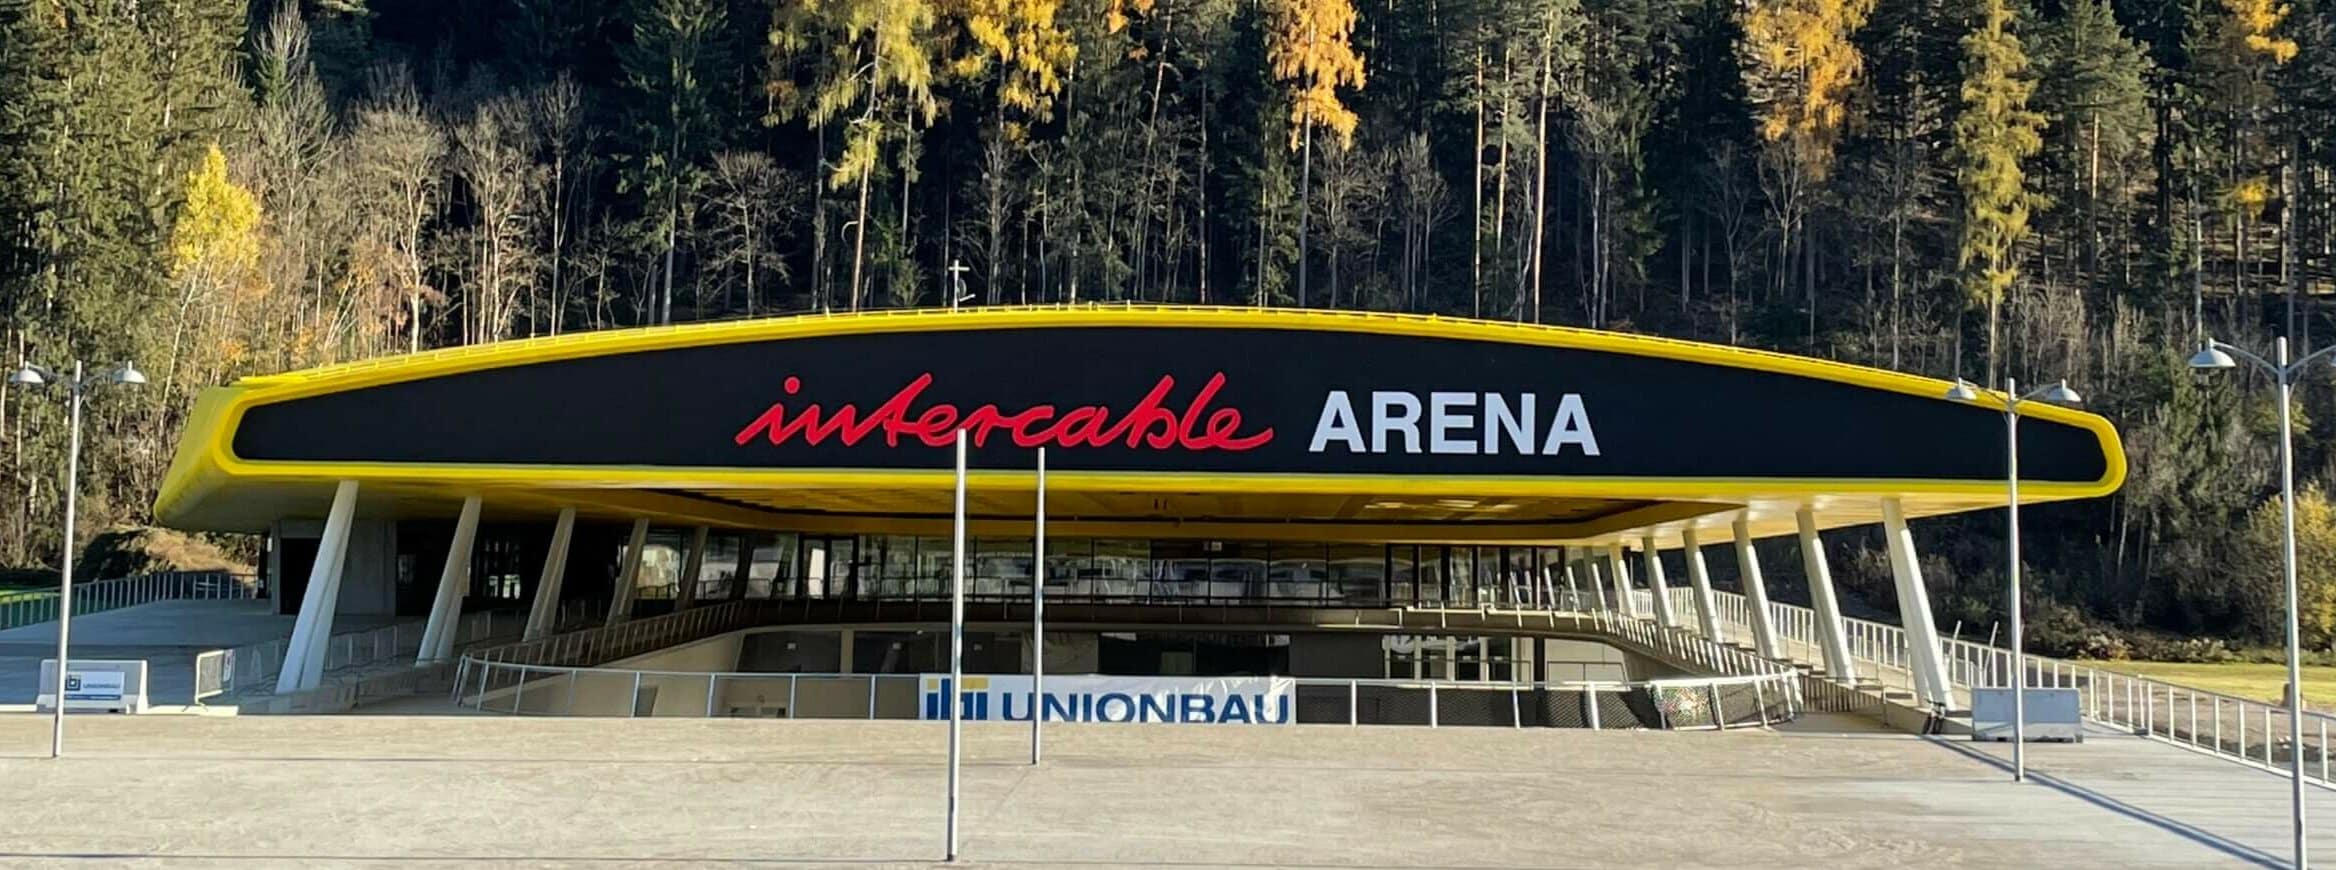 Intercable Arena – Bruneck, Südtirol (IT)